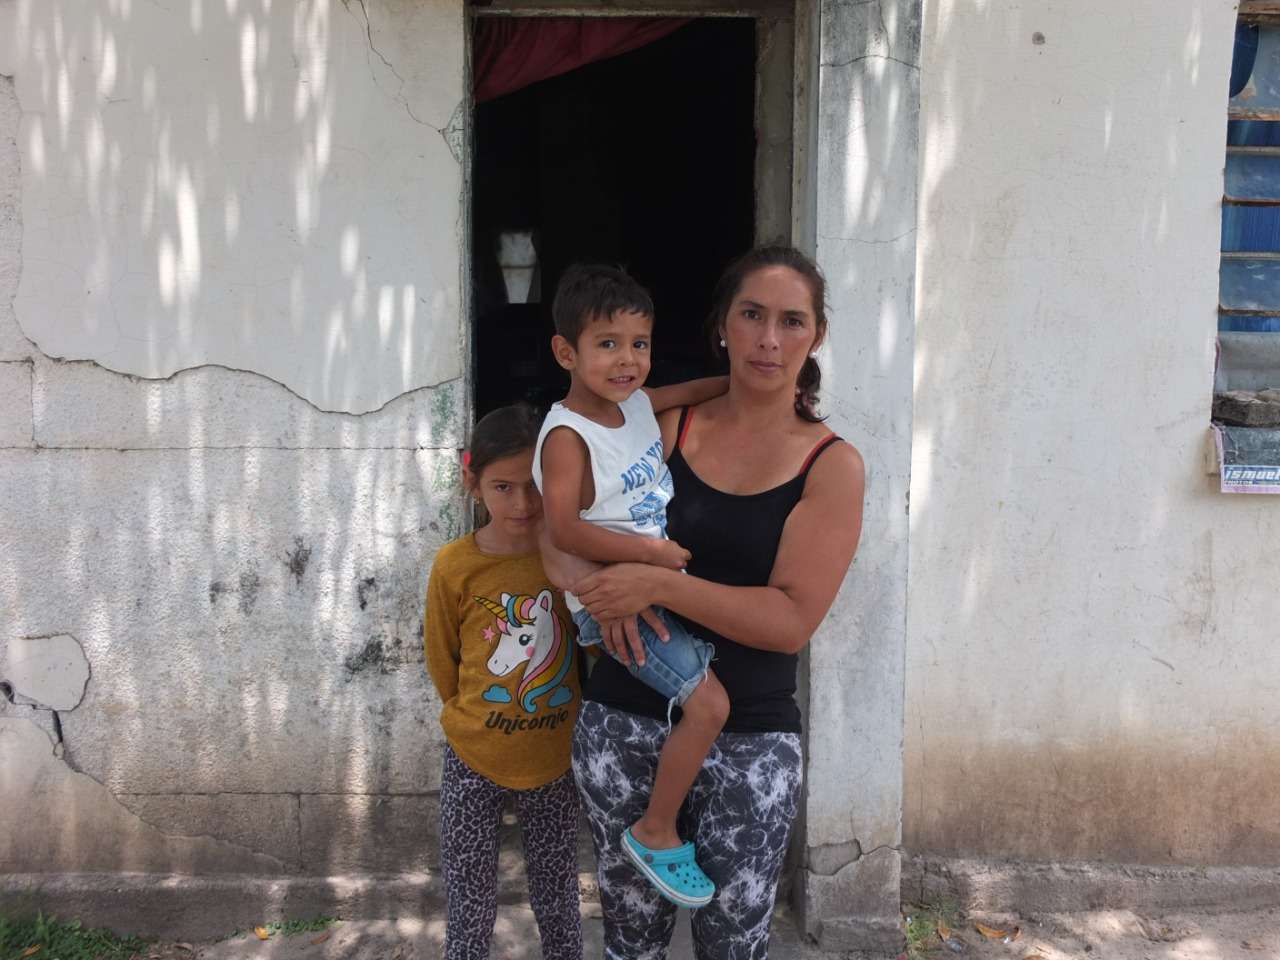 Tras un incendio, una familia pide ayuda urgente por la precariedad de su vivienda